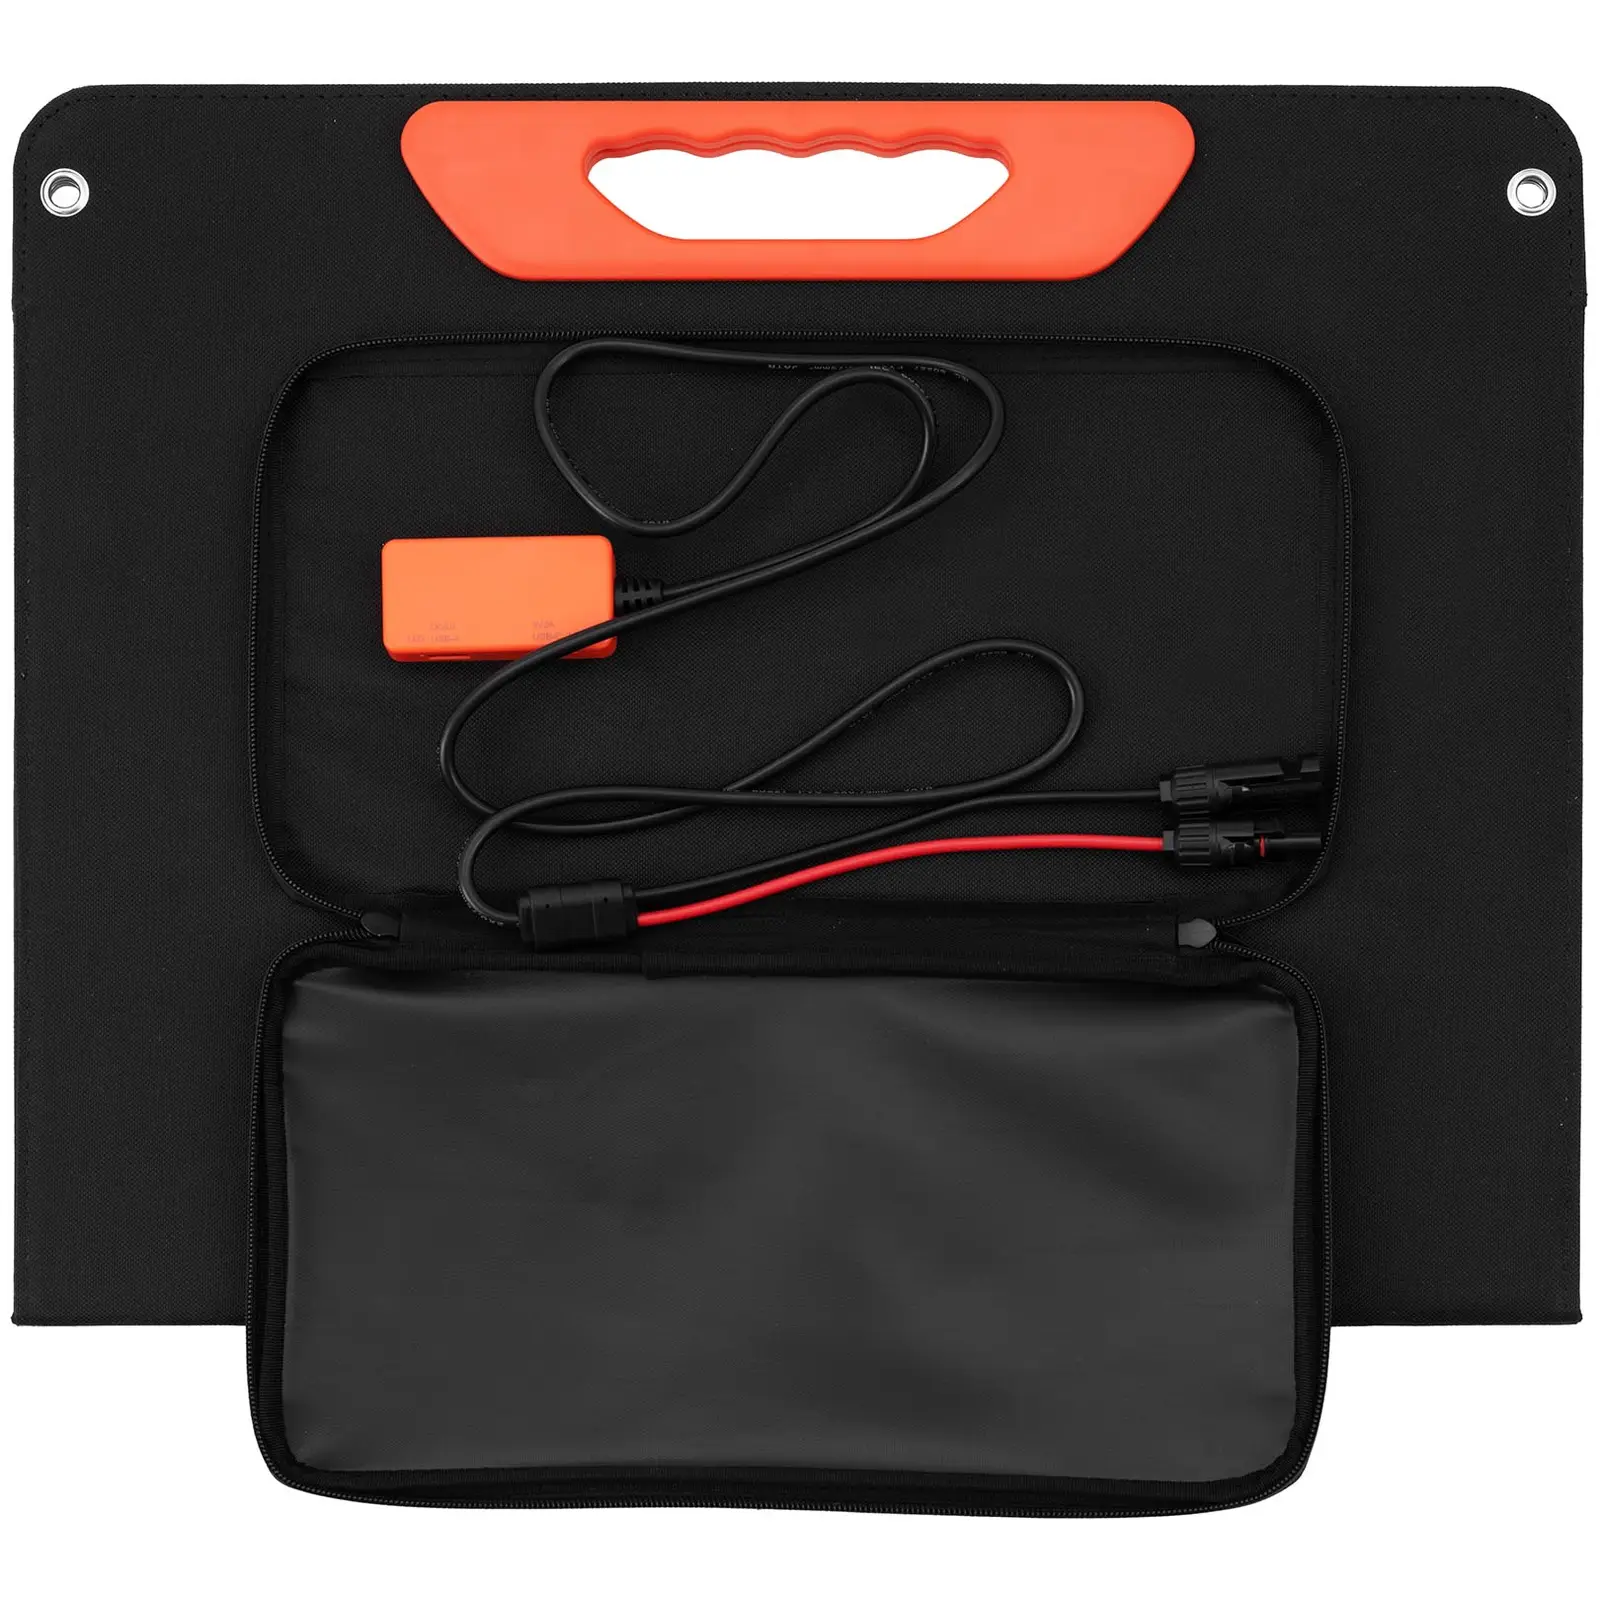 Solárna taška - skladacia - 60 W - 2 USB porty